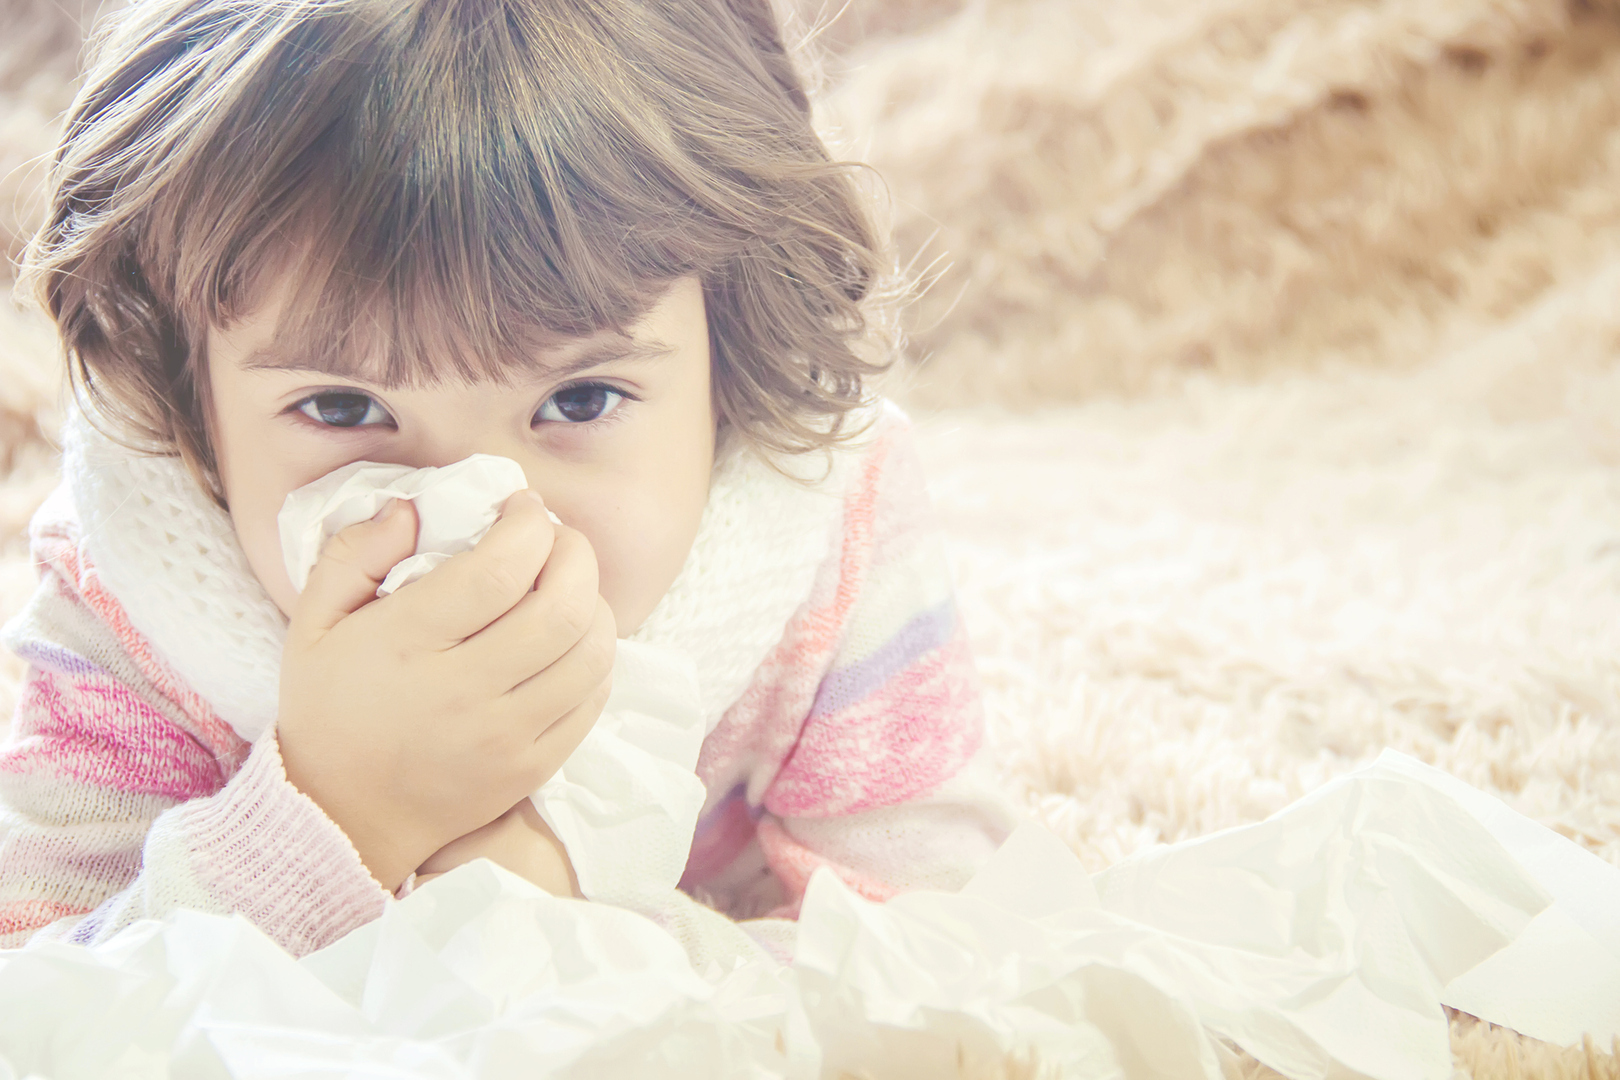 نسيج في أنوف الأطفال يلعب دورا رئيسيا في الحماية من عدوى SARS-CoV-2